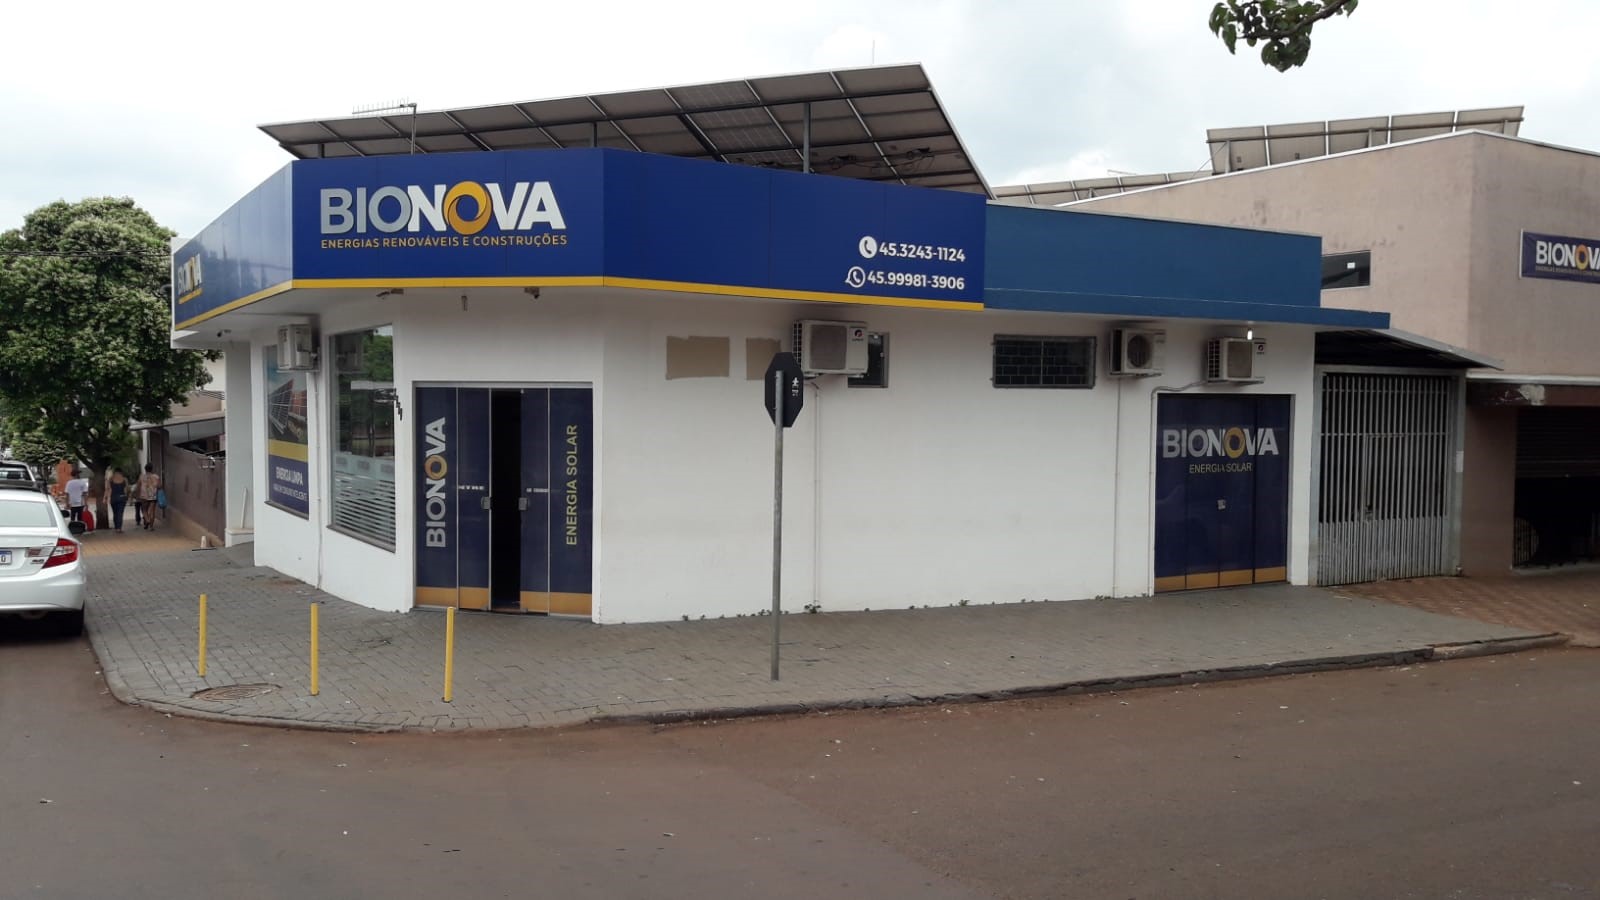 Escritório da Bionova, em Nova Aurora (PR). Foto: Divulgação